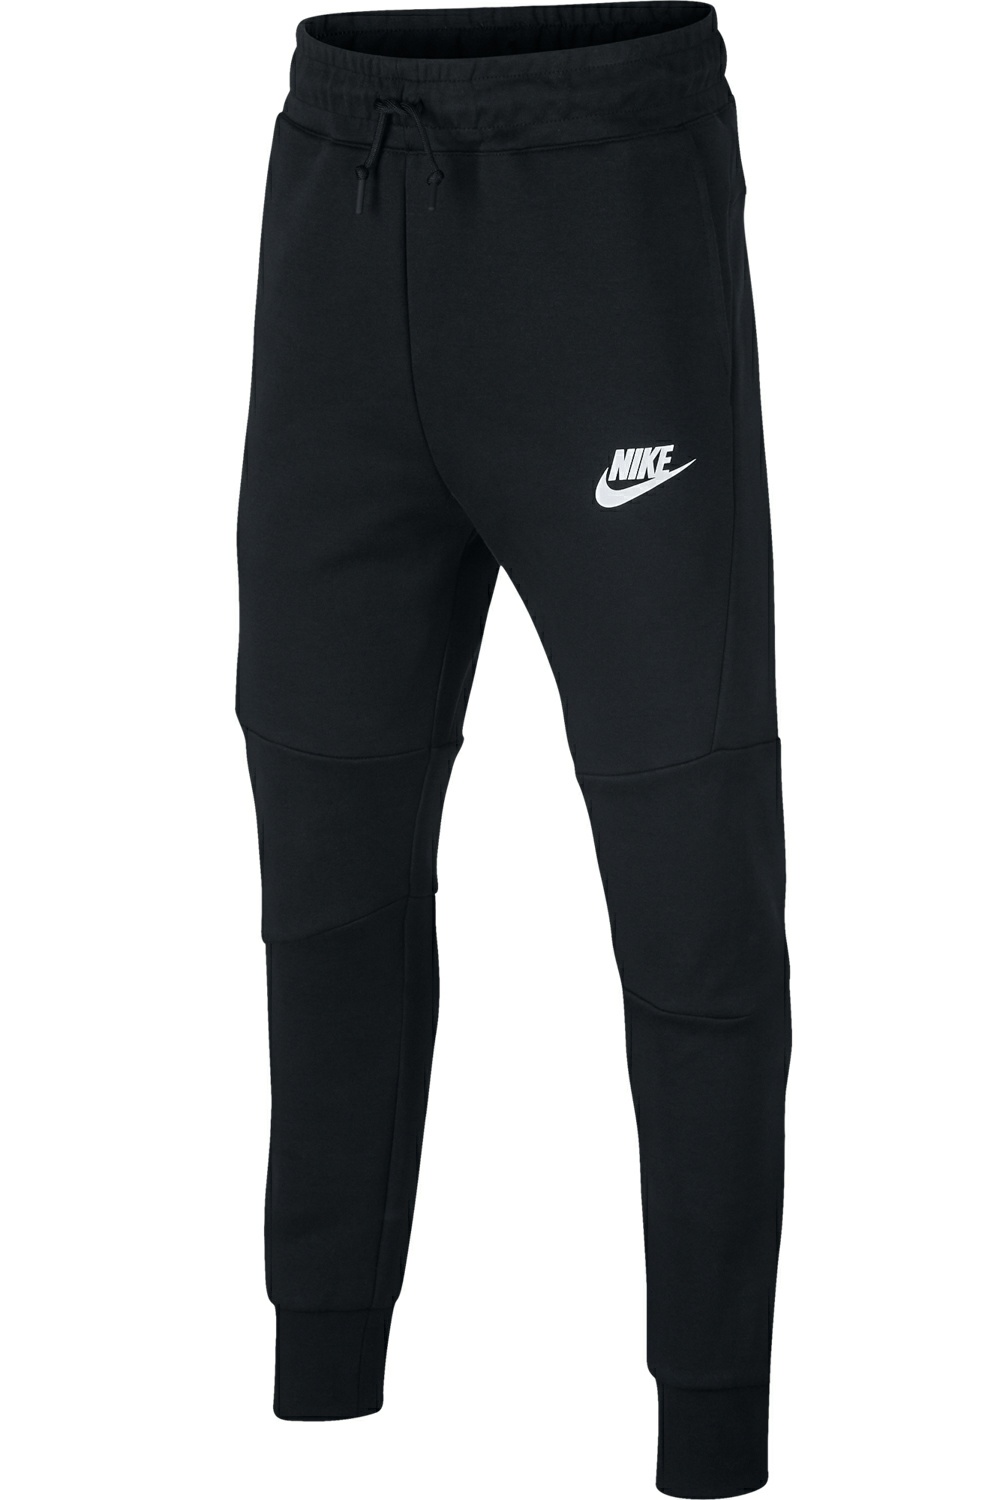 Παιδικά/Boys/Ρούχα/Αθλητικά NIKE - Παιδική αγορίστικη φόρμα Nike Sportswear Tech Fleece μαύρη